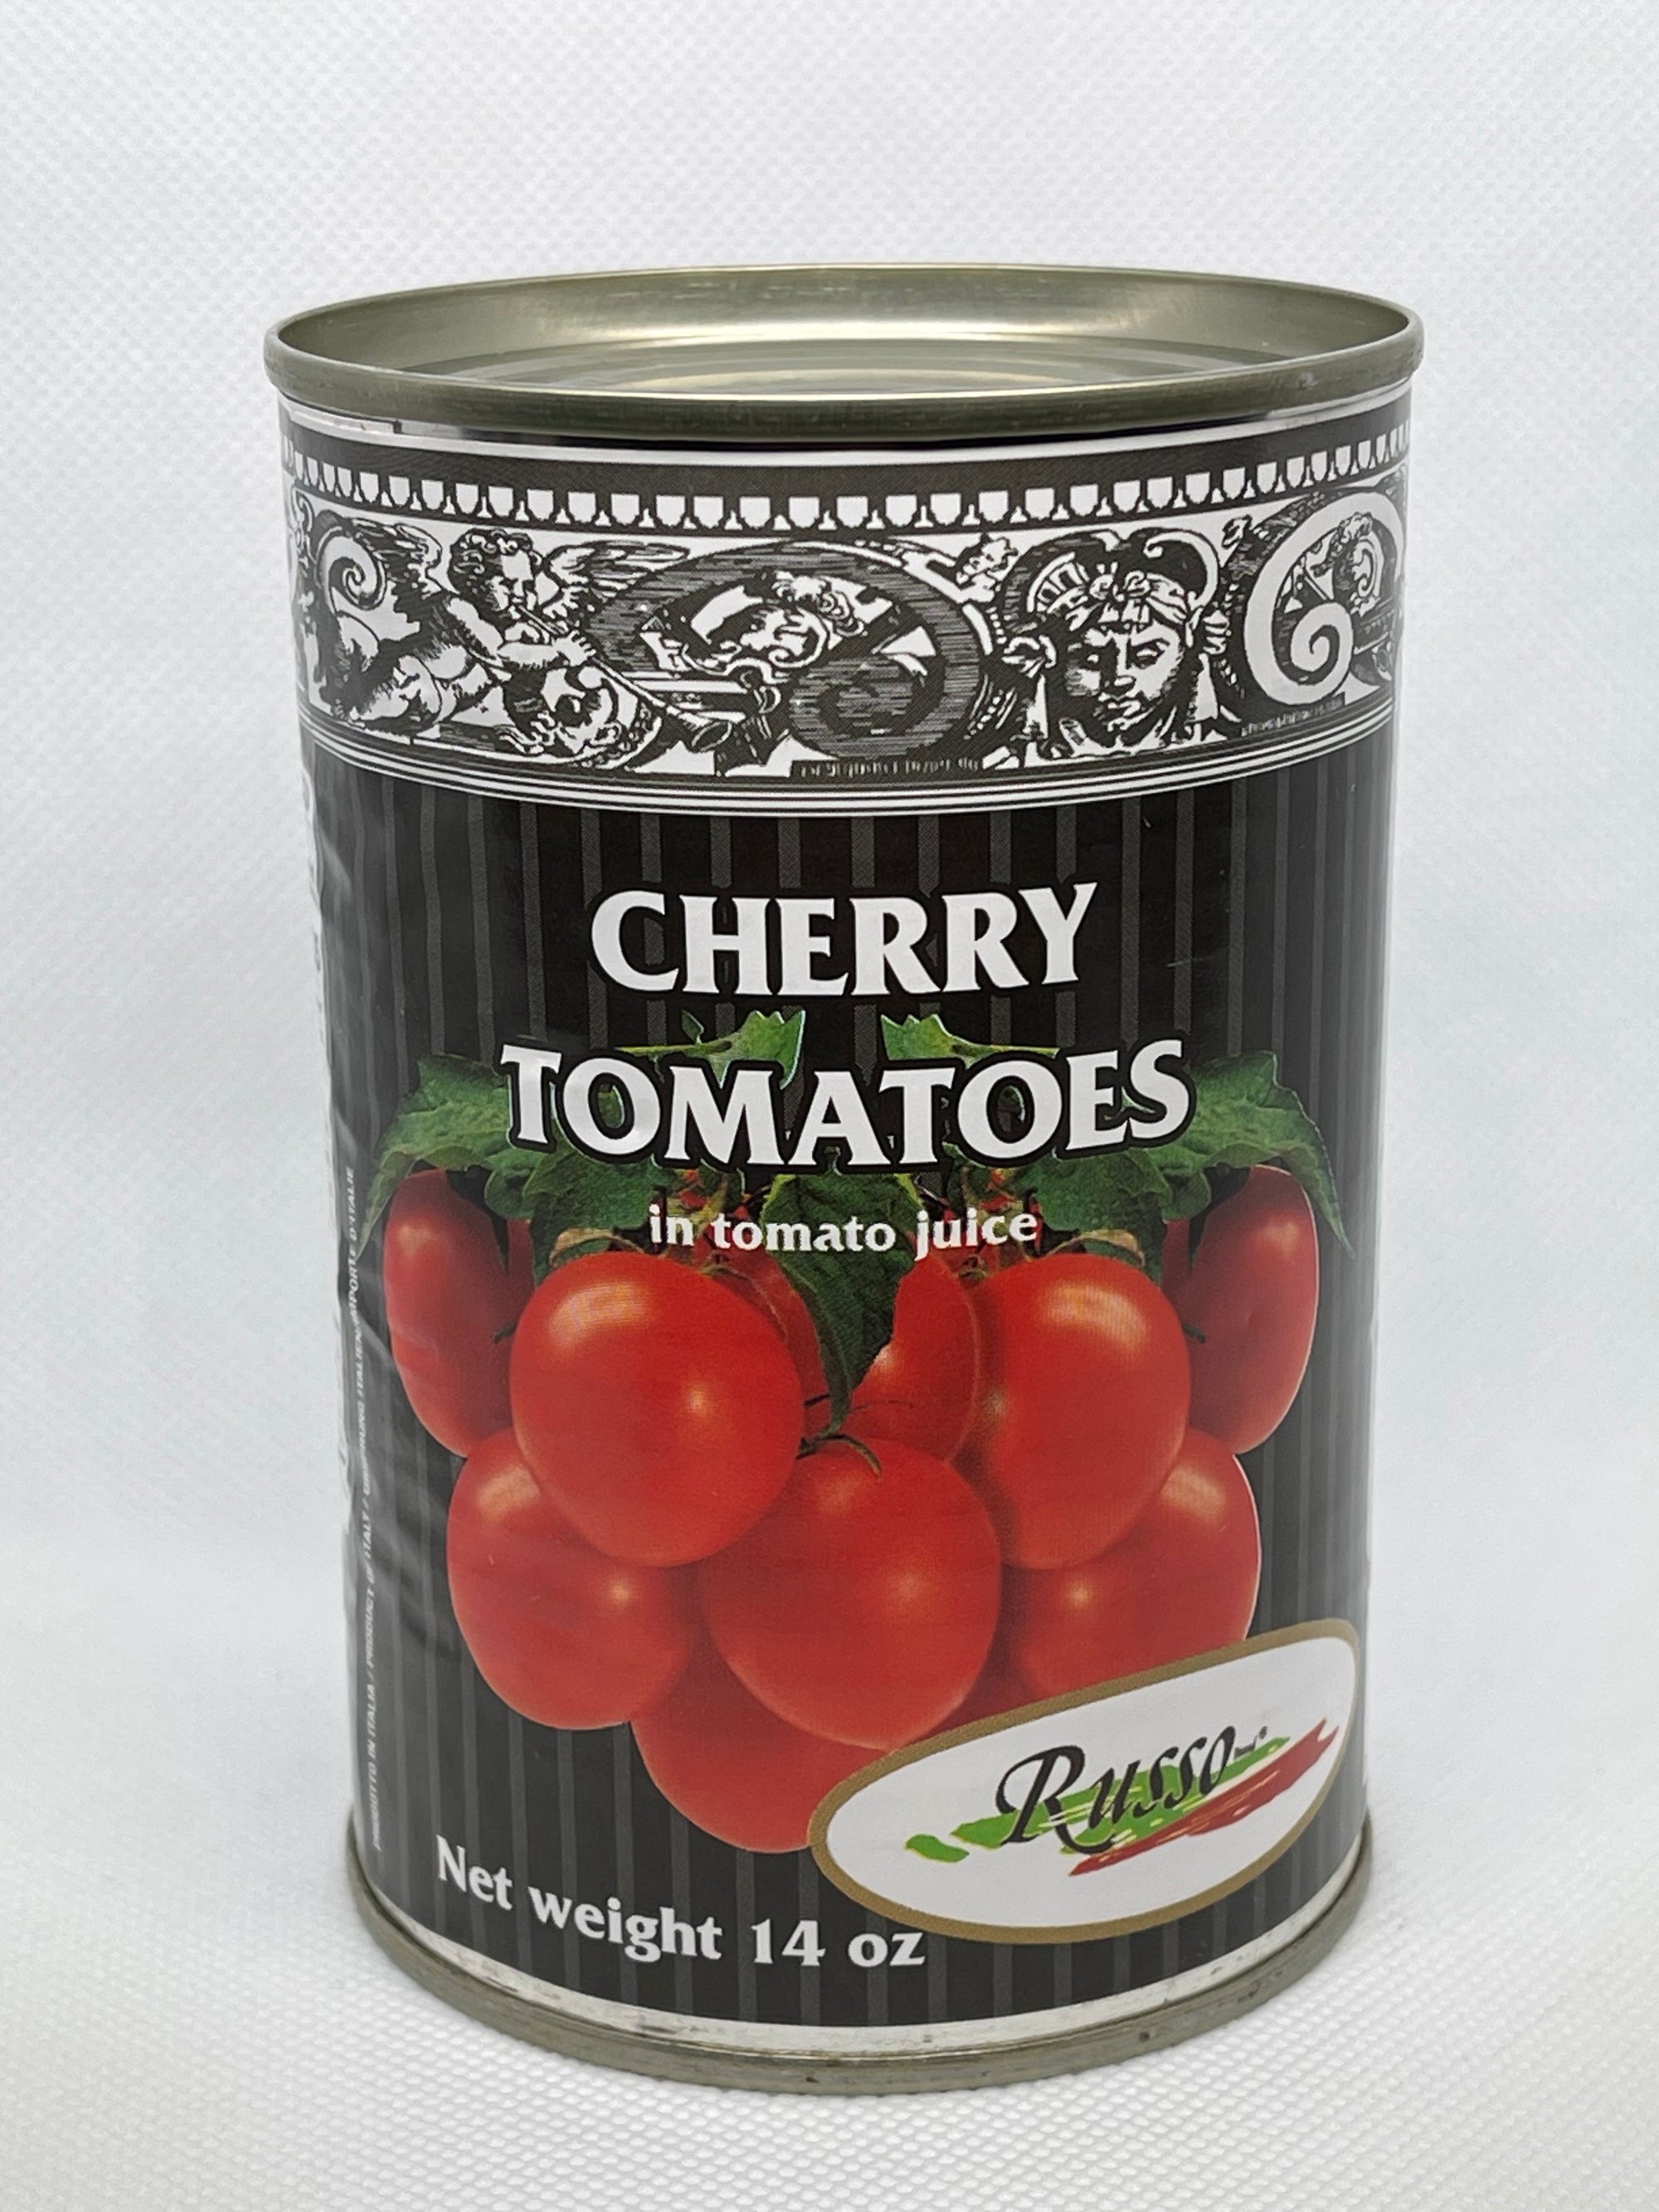 Italian Cherry Tomatoes